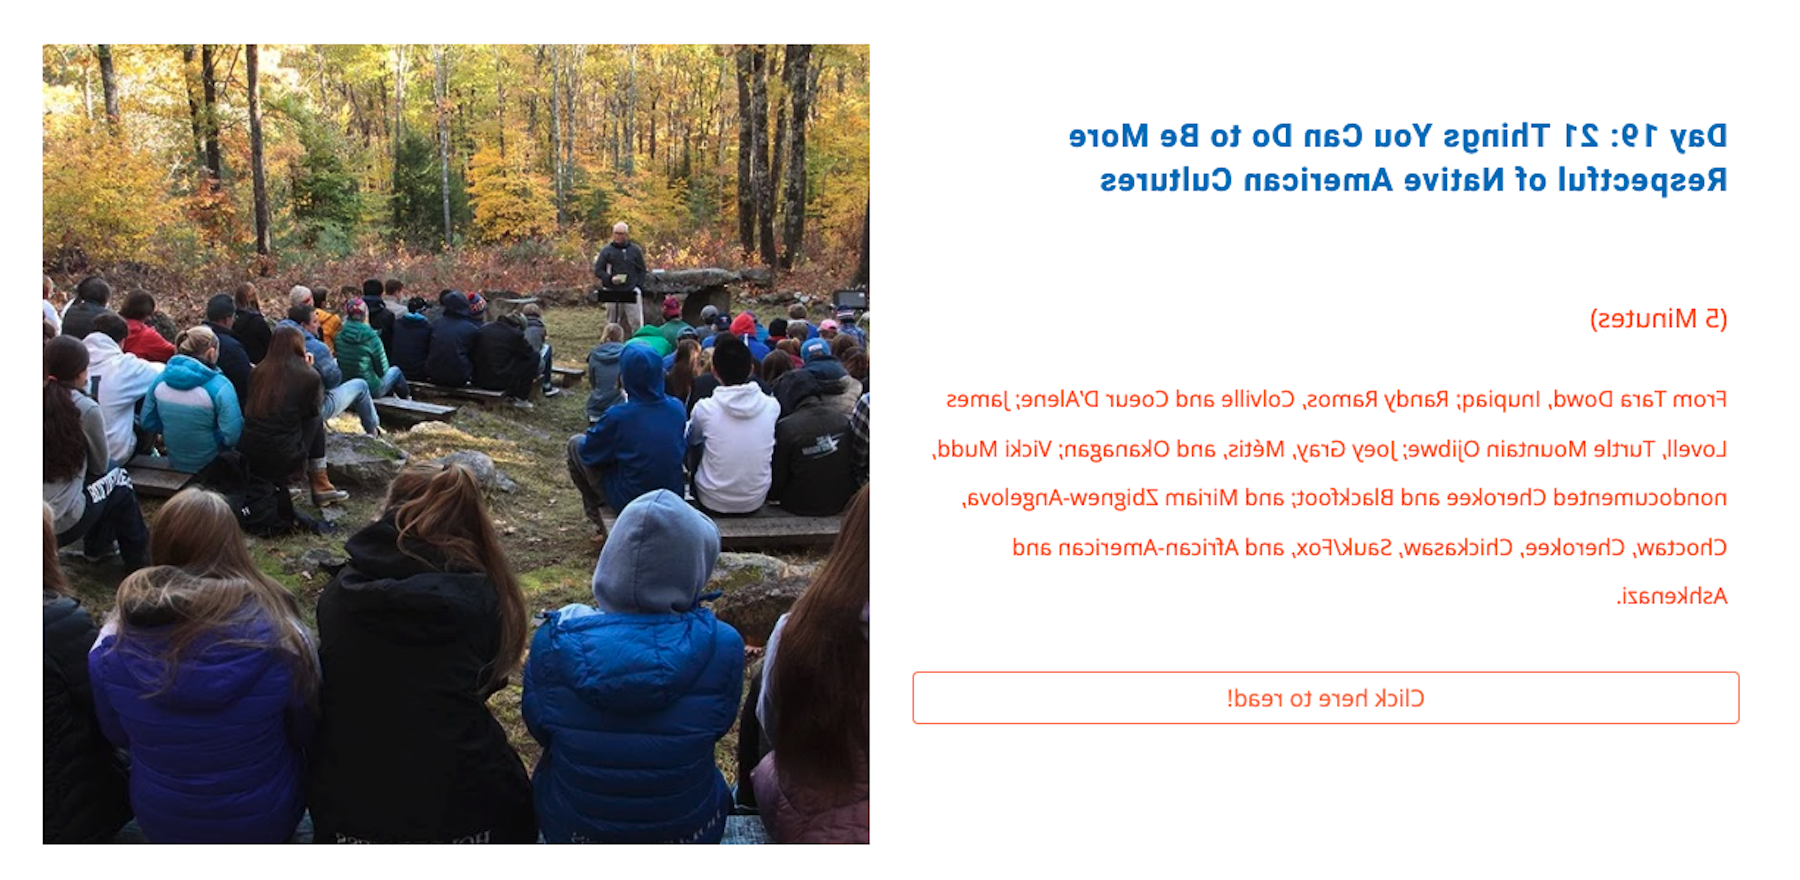 Screenshot of 21-day 股本 challenge website. “第19天:21件你能做的让你更尊重美洲原住民文化的事情”的文字和一张户外教室的照片一起写着. 